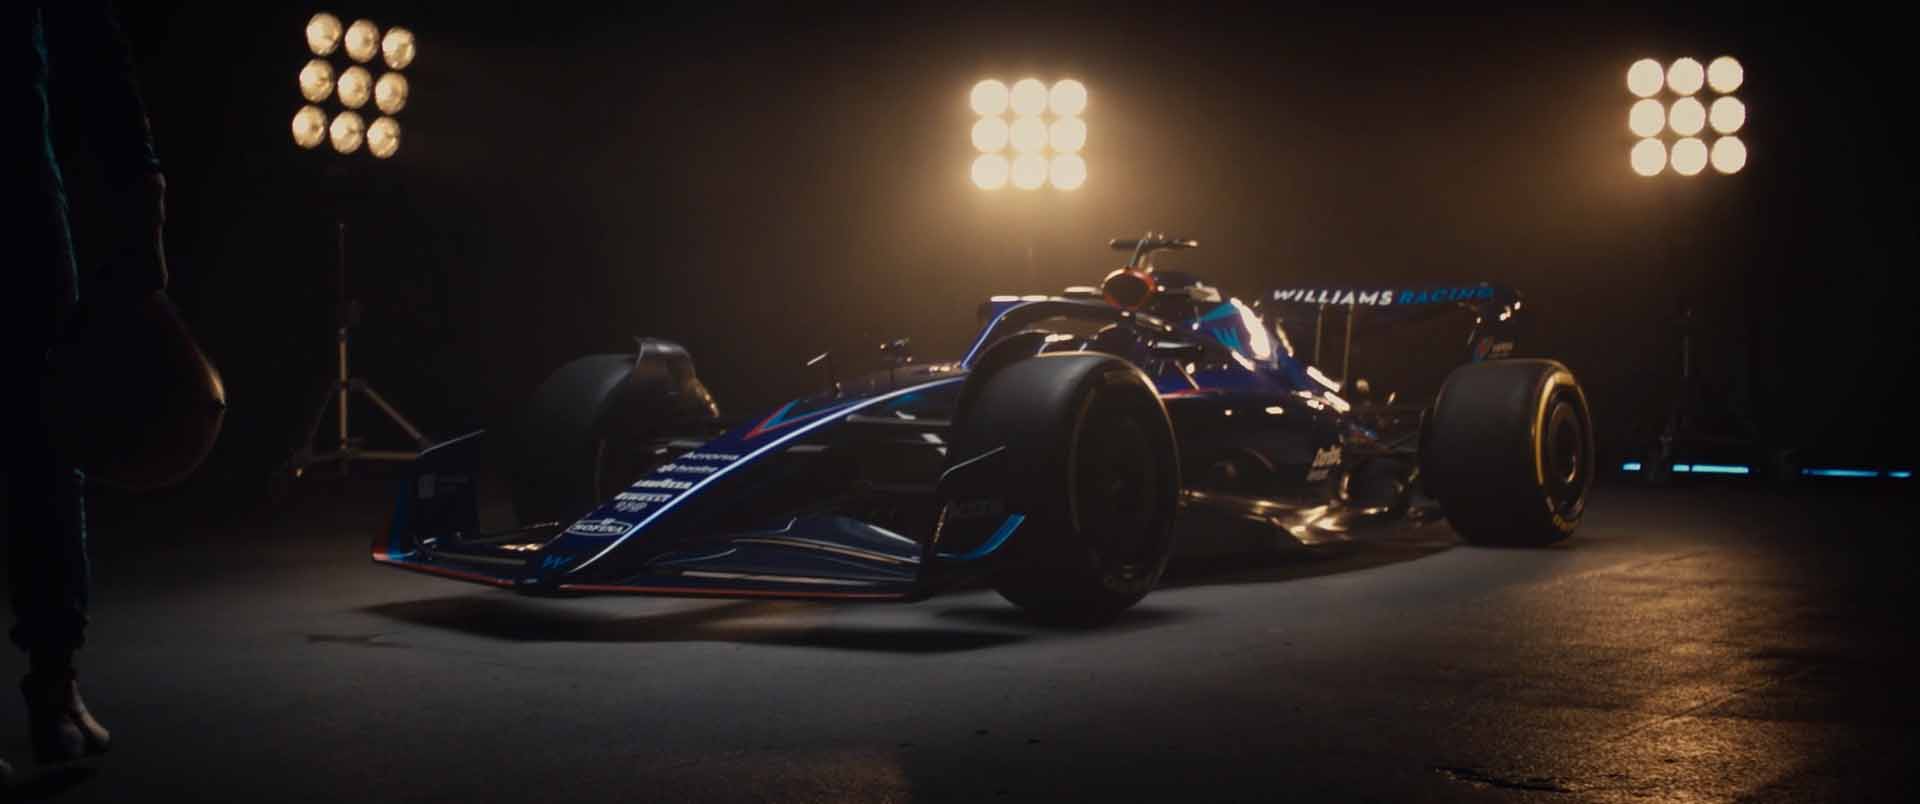 F1 - Williams